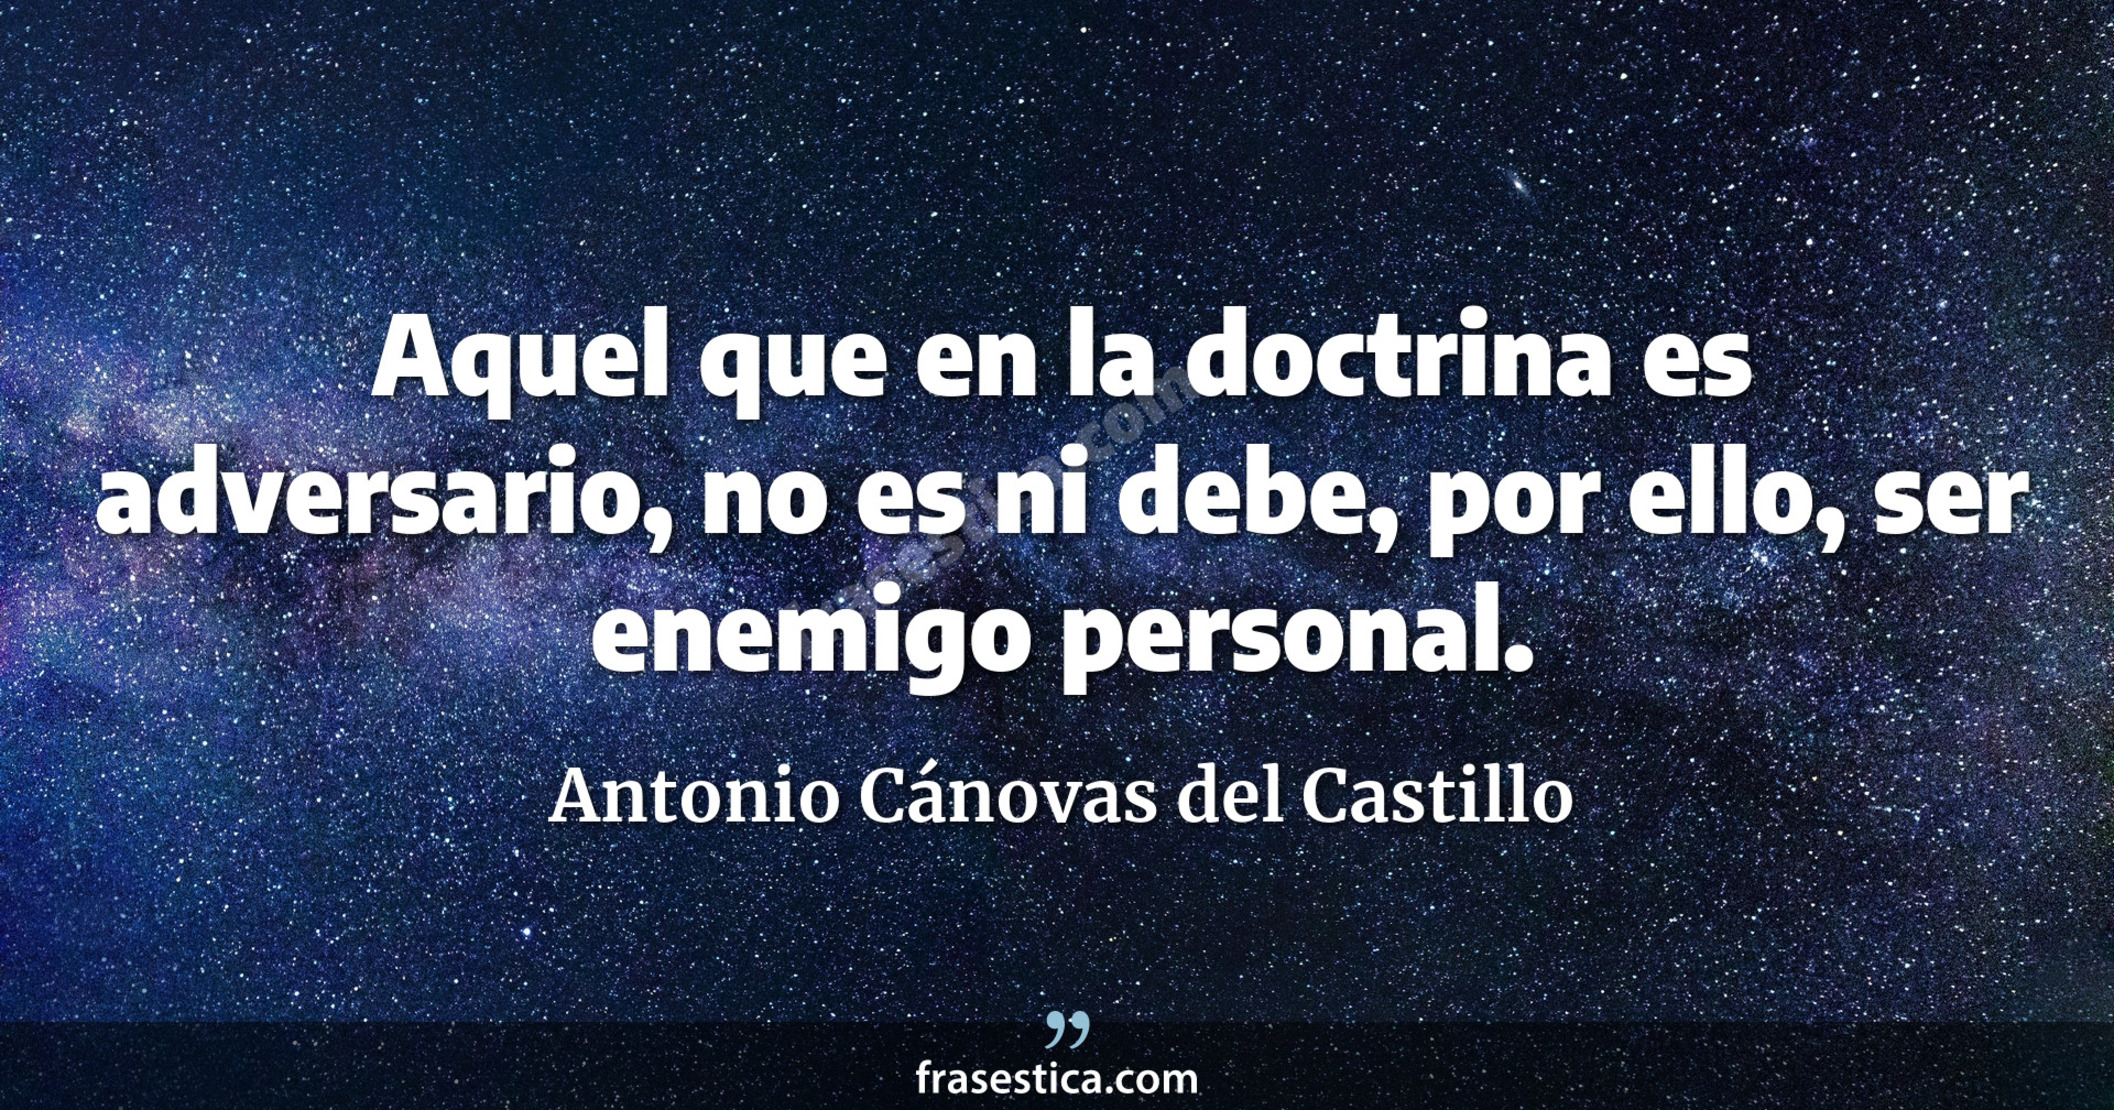 Aquel que en la doctrina es adversario, no es ni debe, por ello, ser enemigo personal. - Antonio Cánovas del Castillo